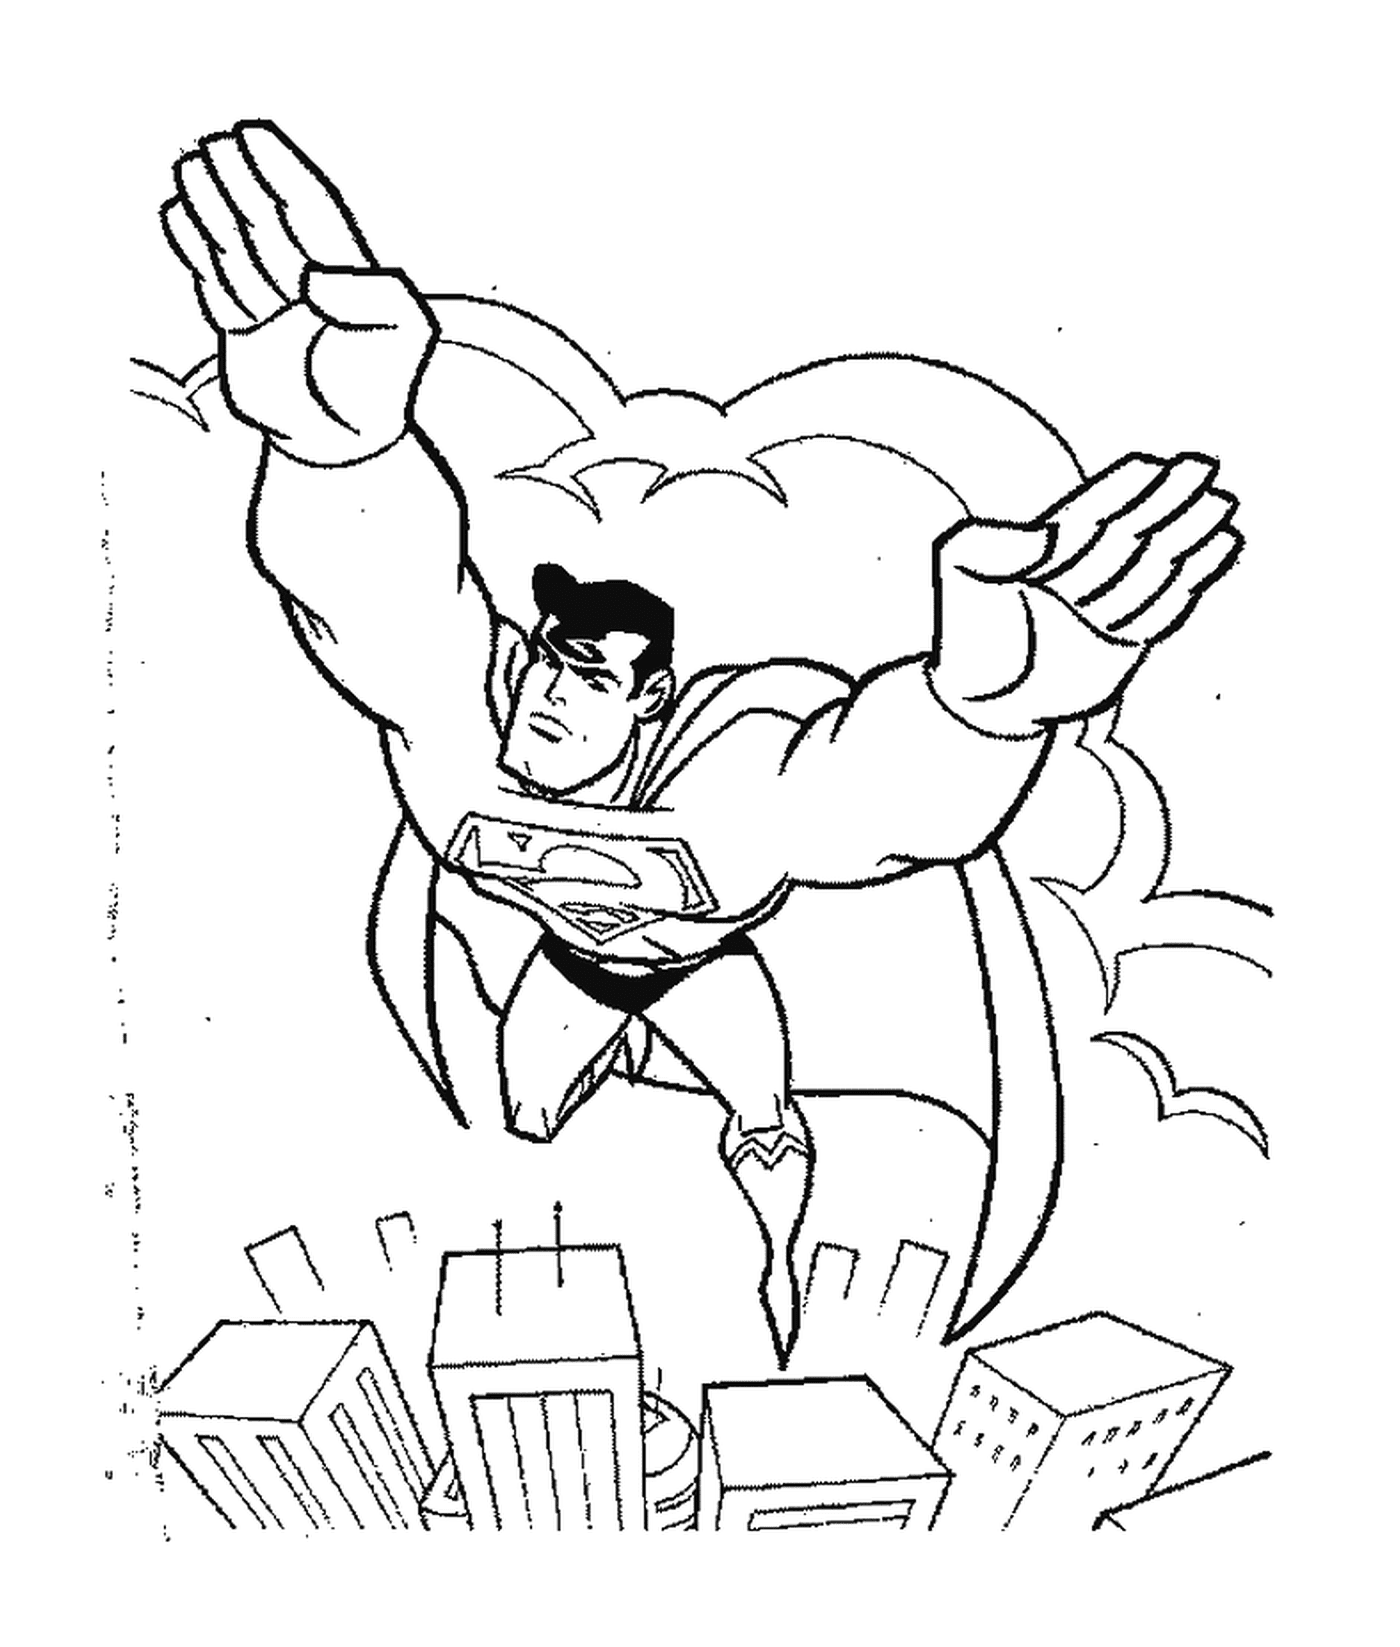   Superman vole au-dessus des gratte-ciel 